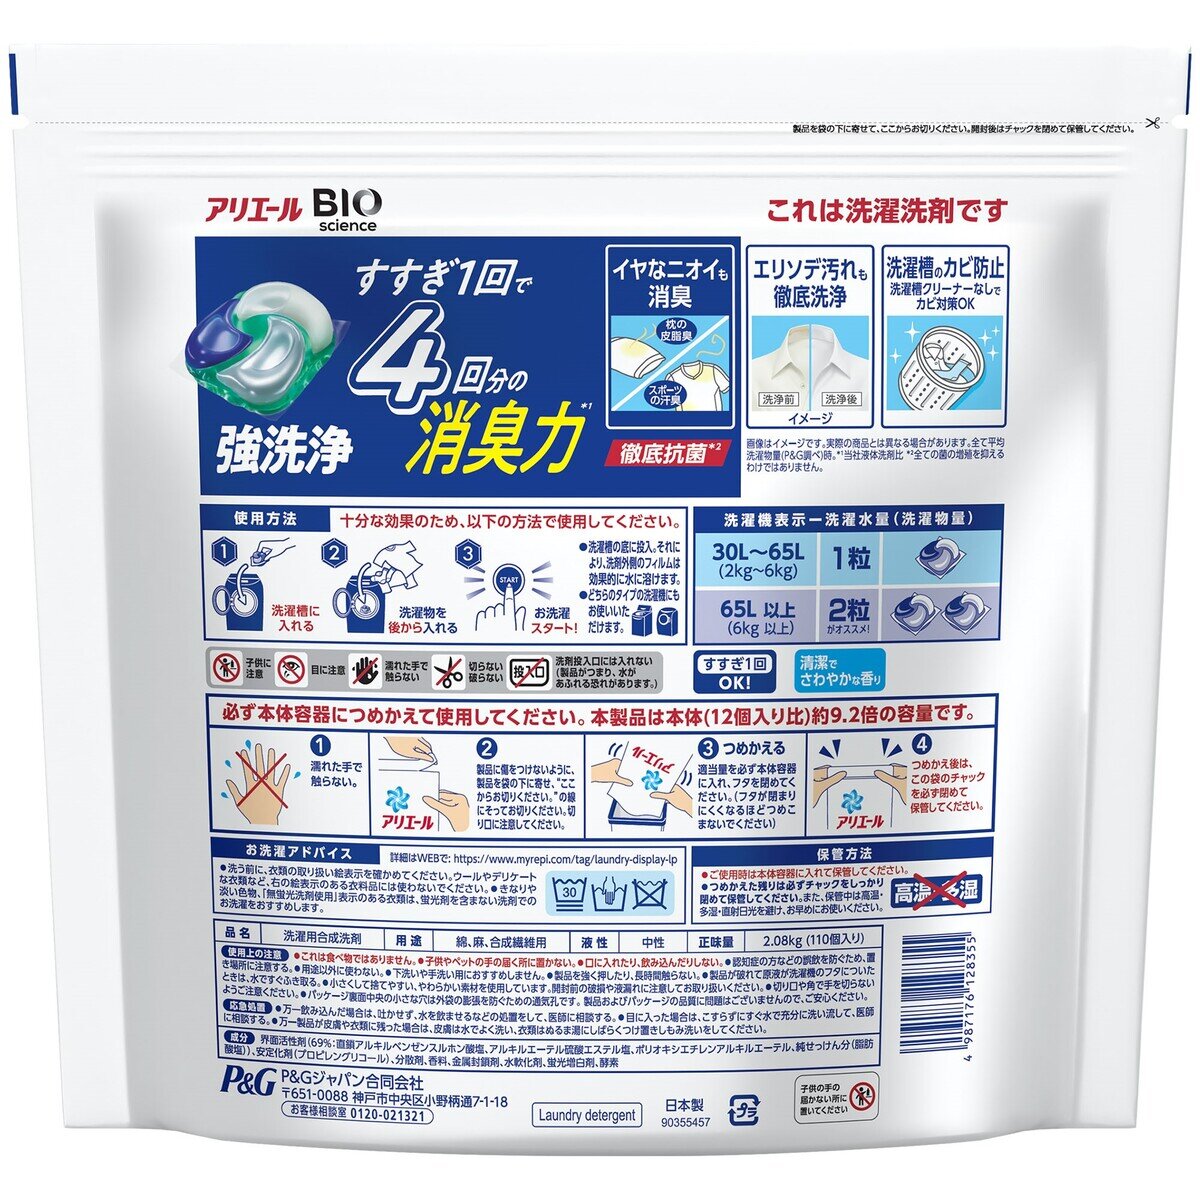 アリエール バイオサイエンス ジェルボール 4D 洗濯洗剤 詰替え110個入り Costco Japan